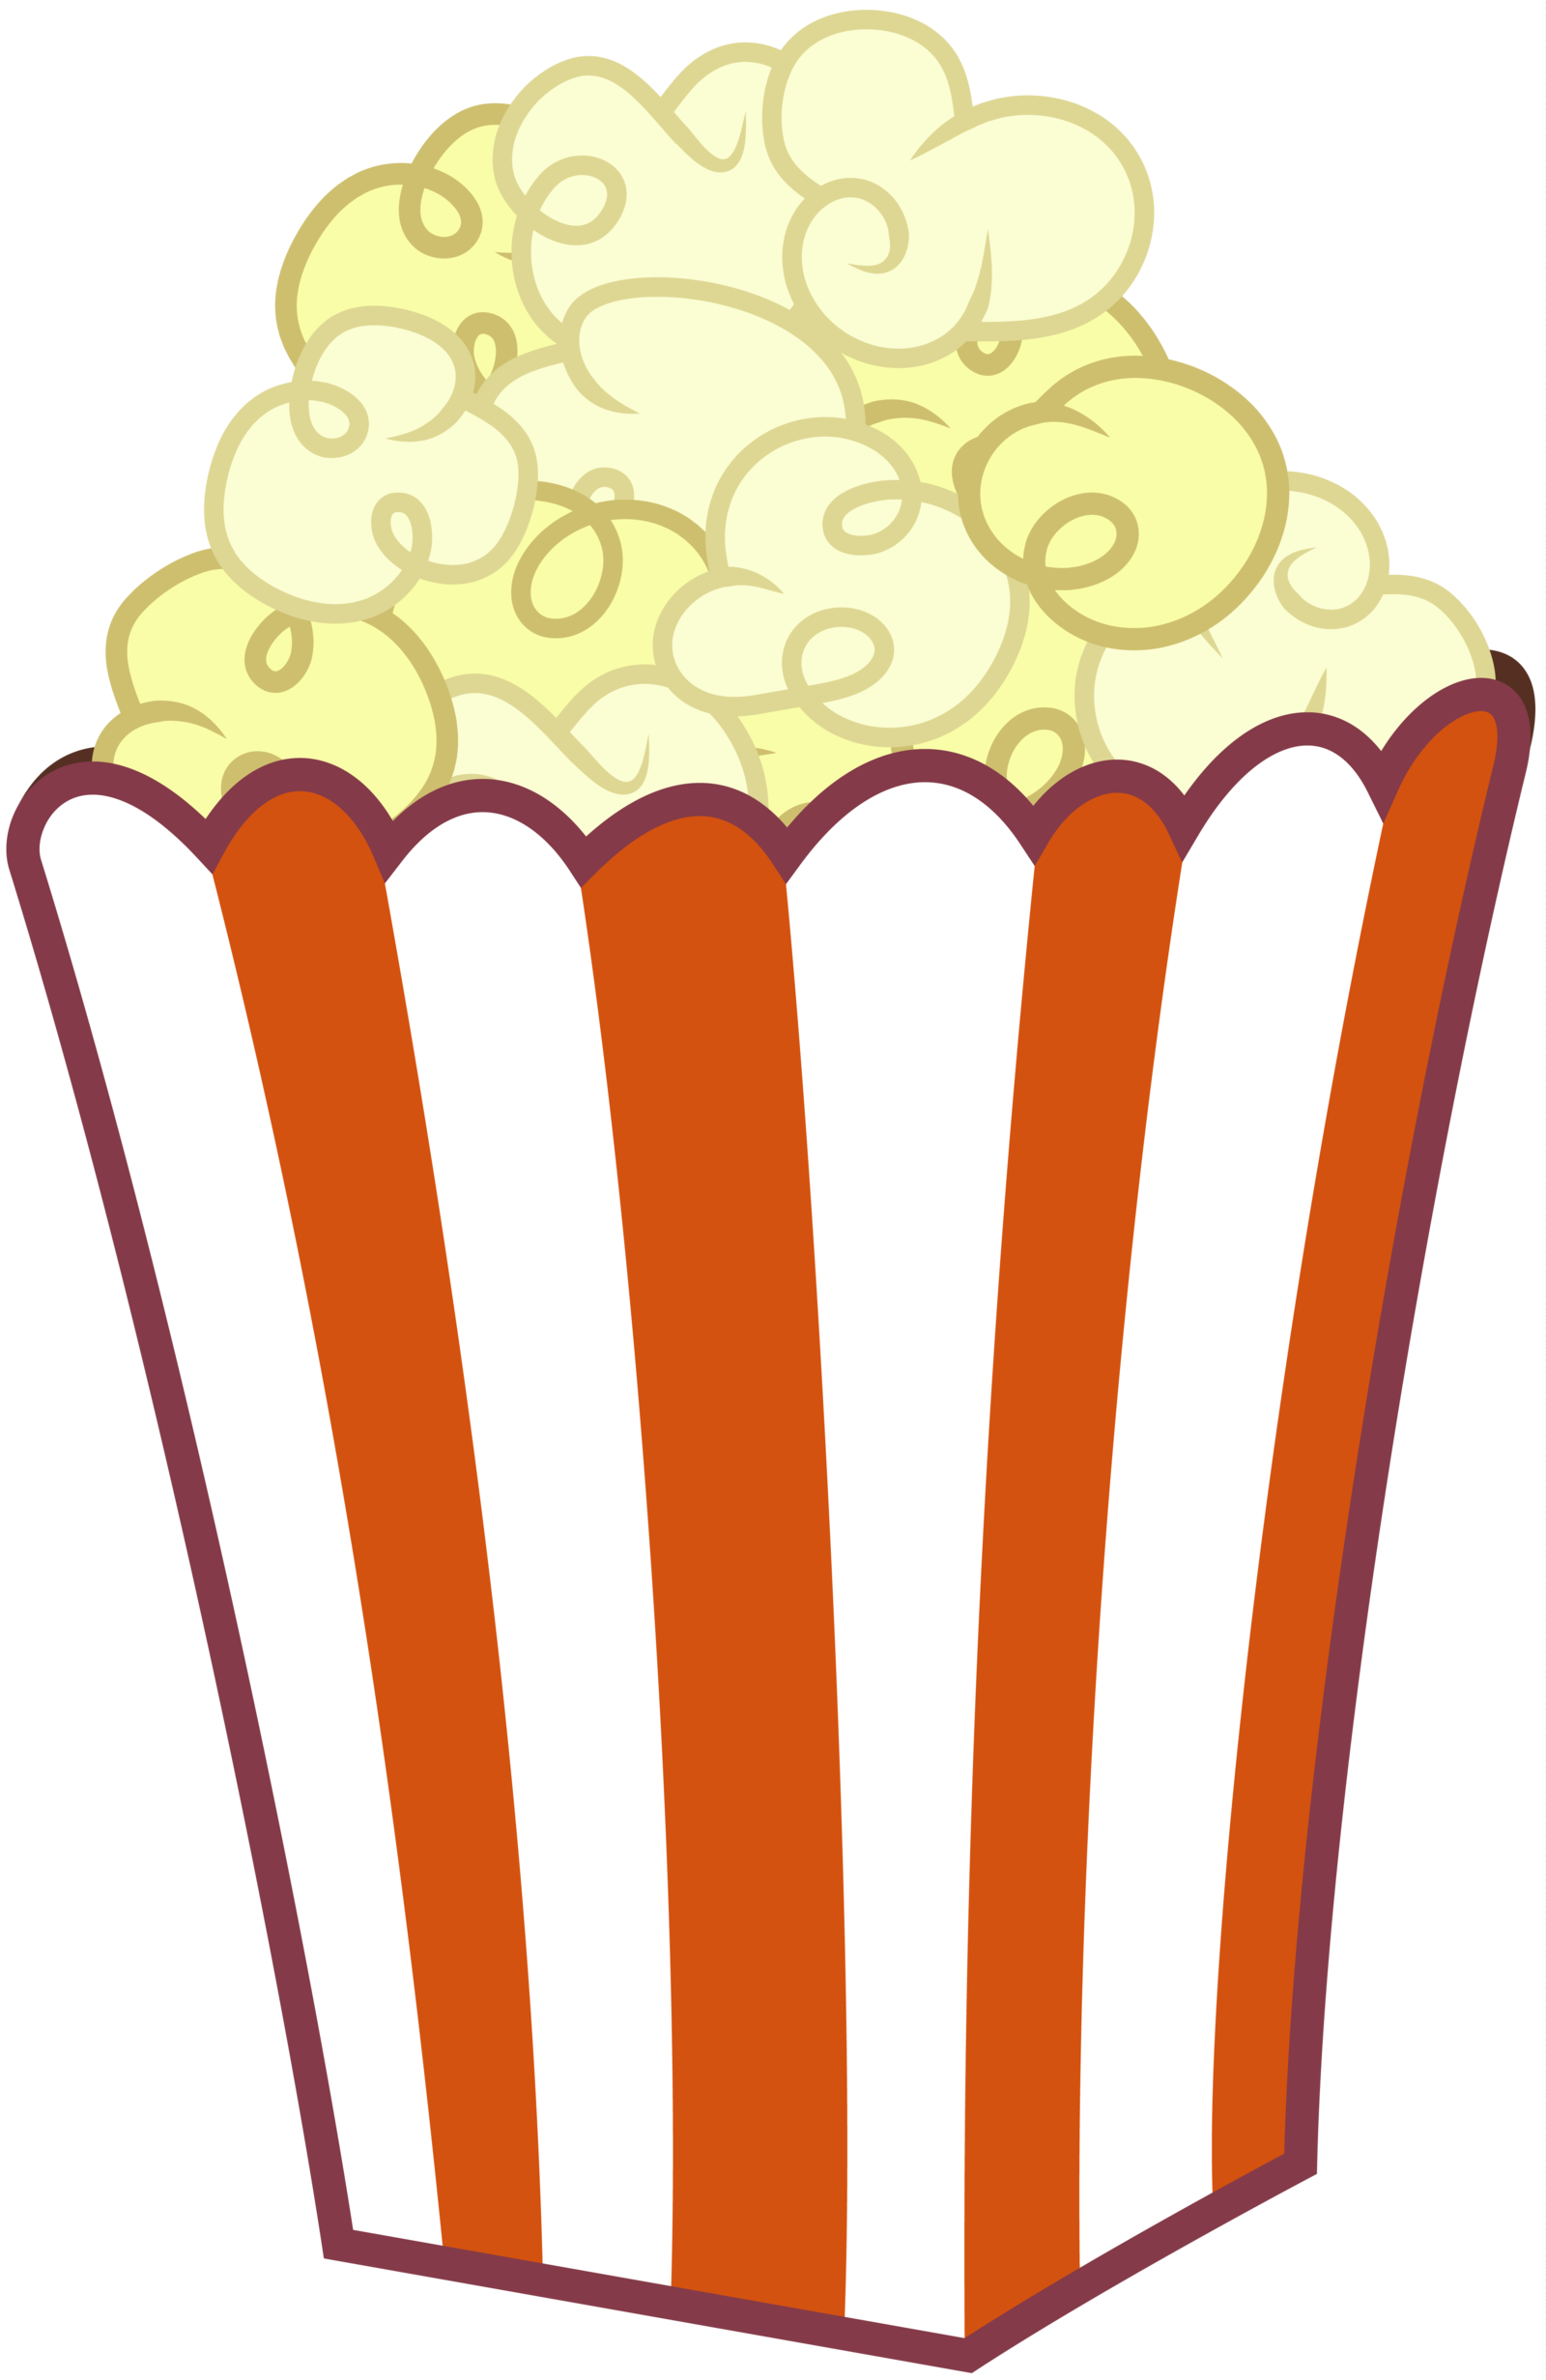 Popcorn Cartoon - Cliparts.co